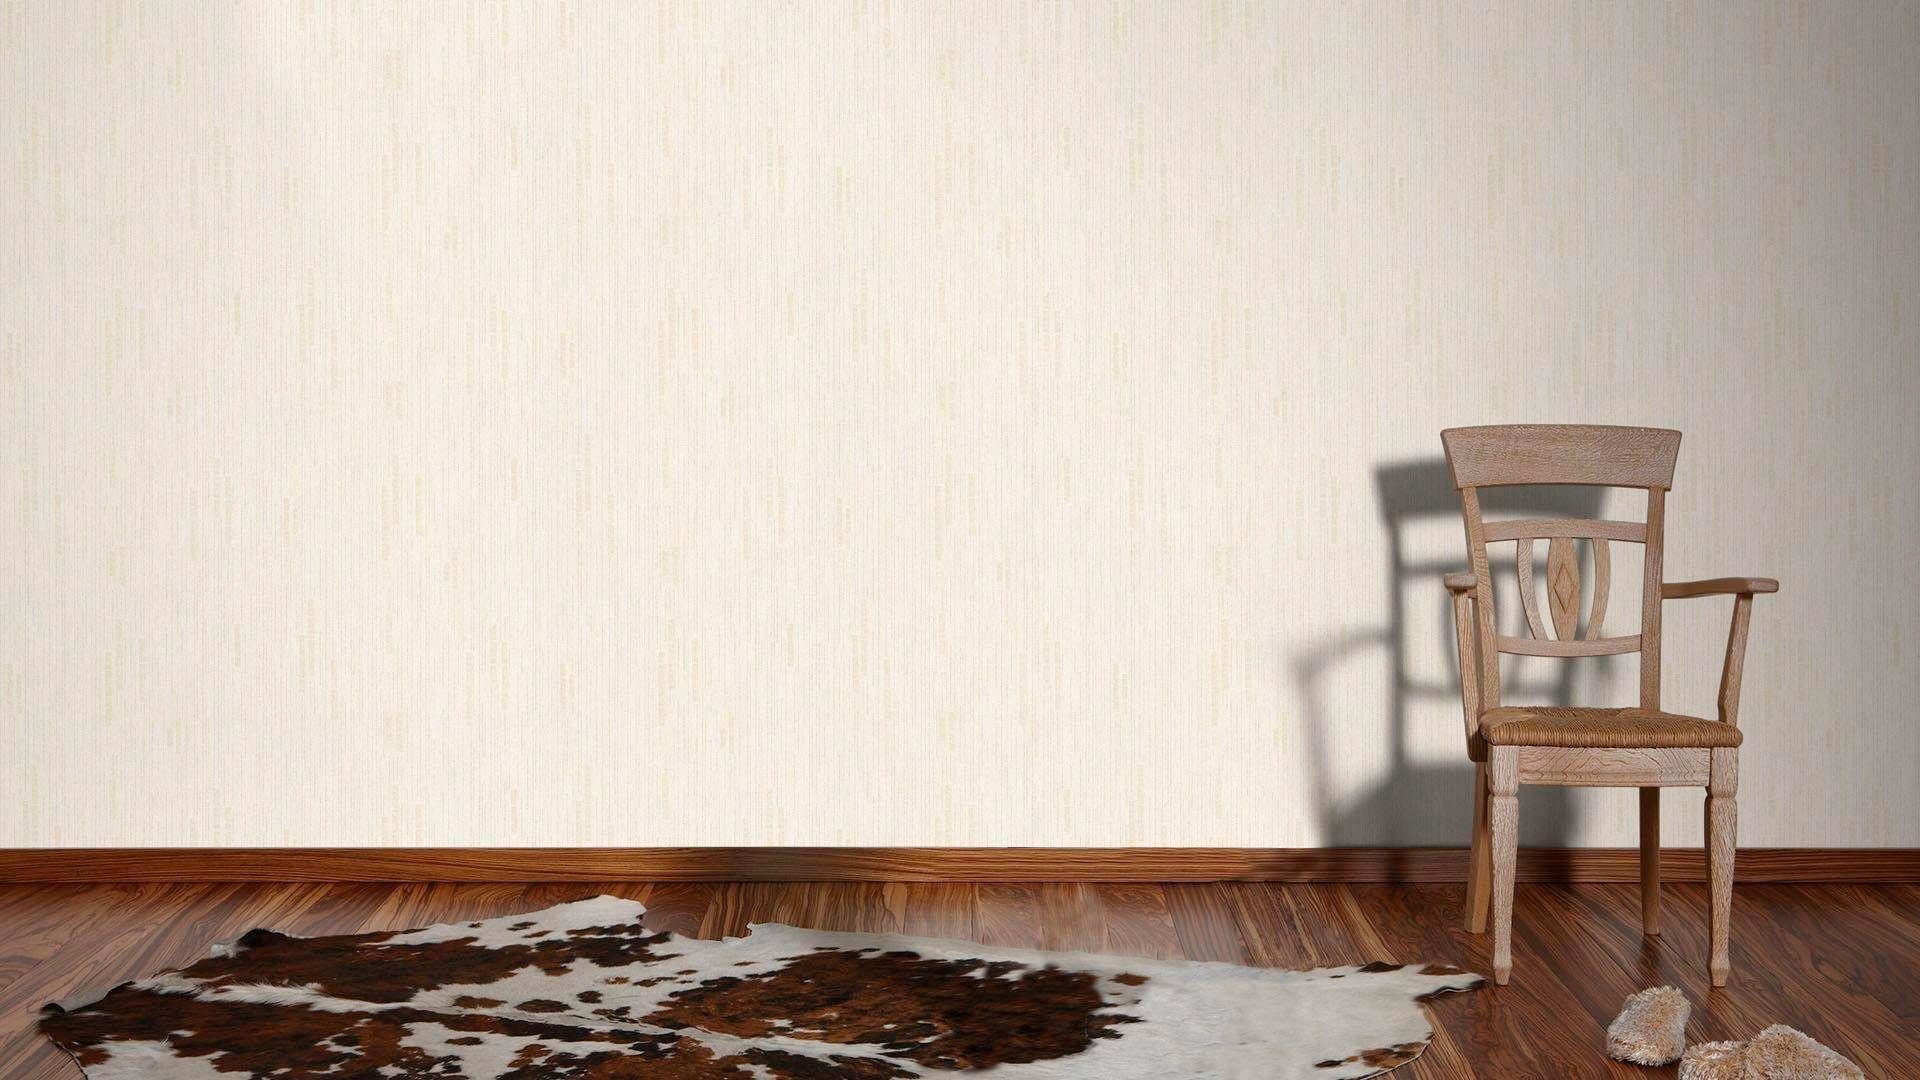 Vliestapete uni, Einfarbig Tapete (1 beige living strukturiert, gemustert, mit Metallic meliert, Essentials walls Création A.S. Uni Glitzereffekt, St),